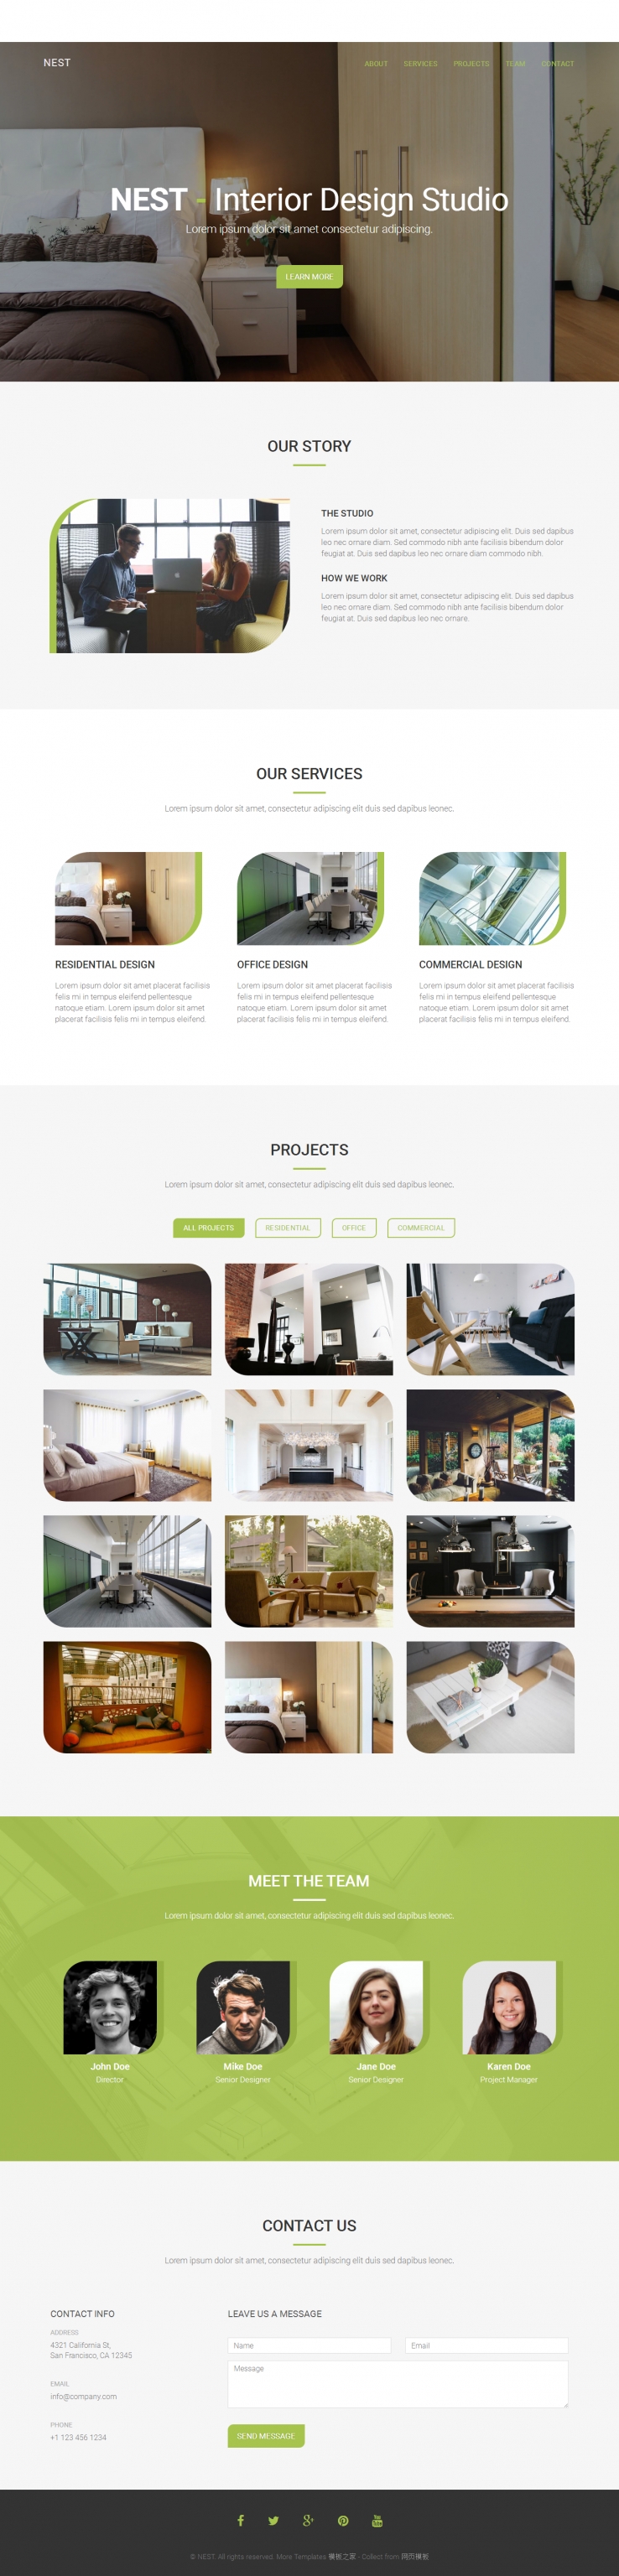 绿色扁平化的家居装修设计企业网站模版下载